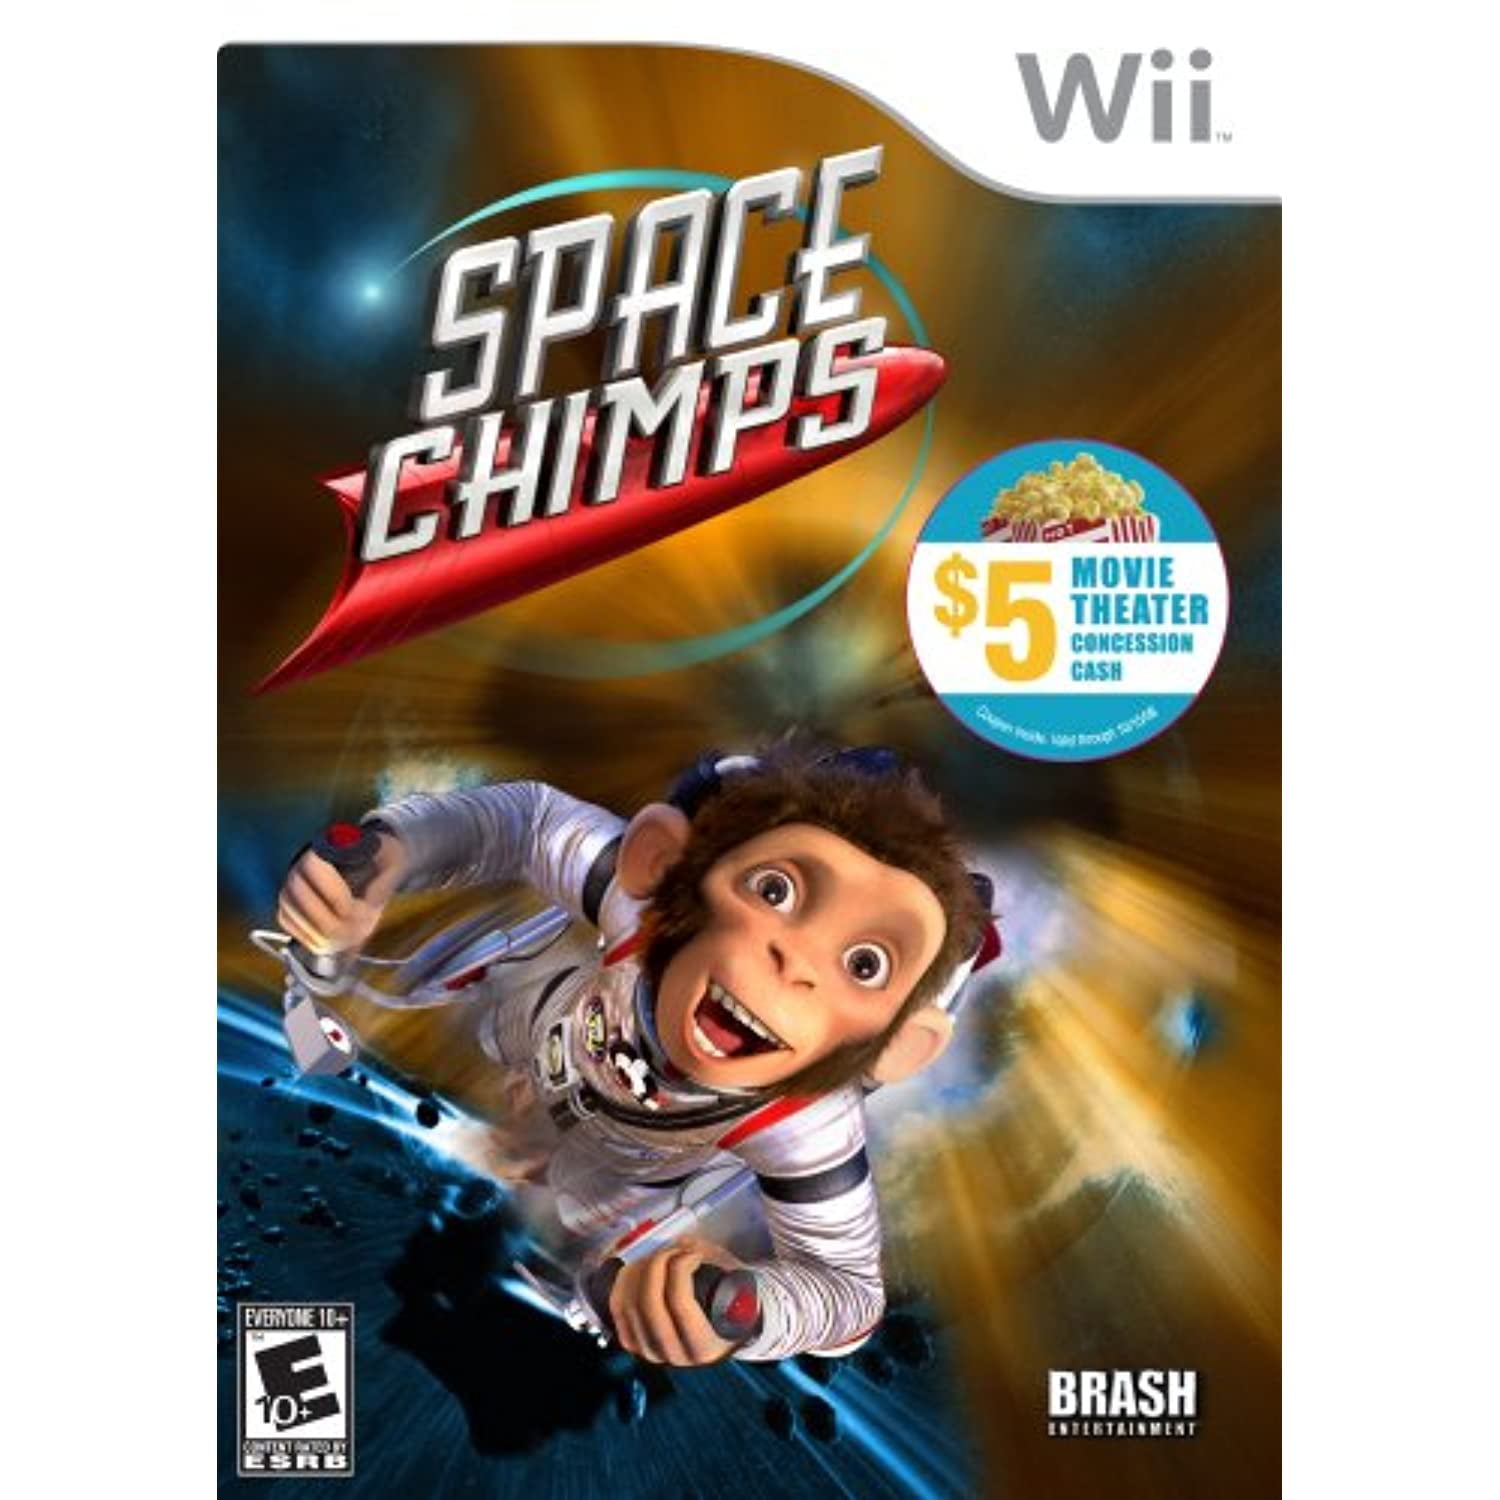 Space Chimps (PS2) [ E0981 ] - Bem vindo(a) à nossa loja virtual